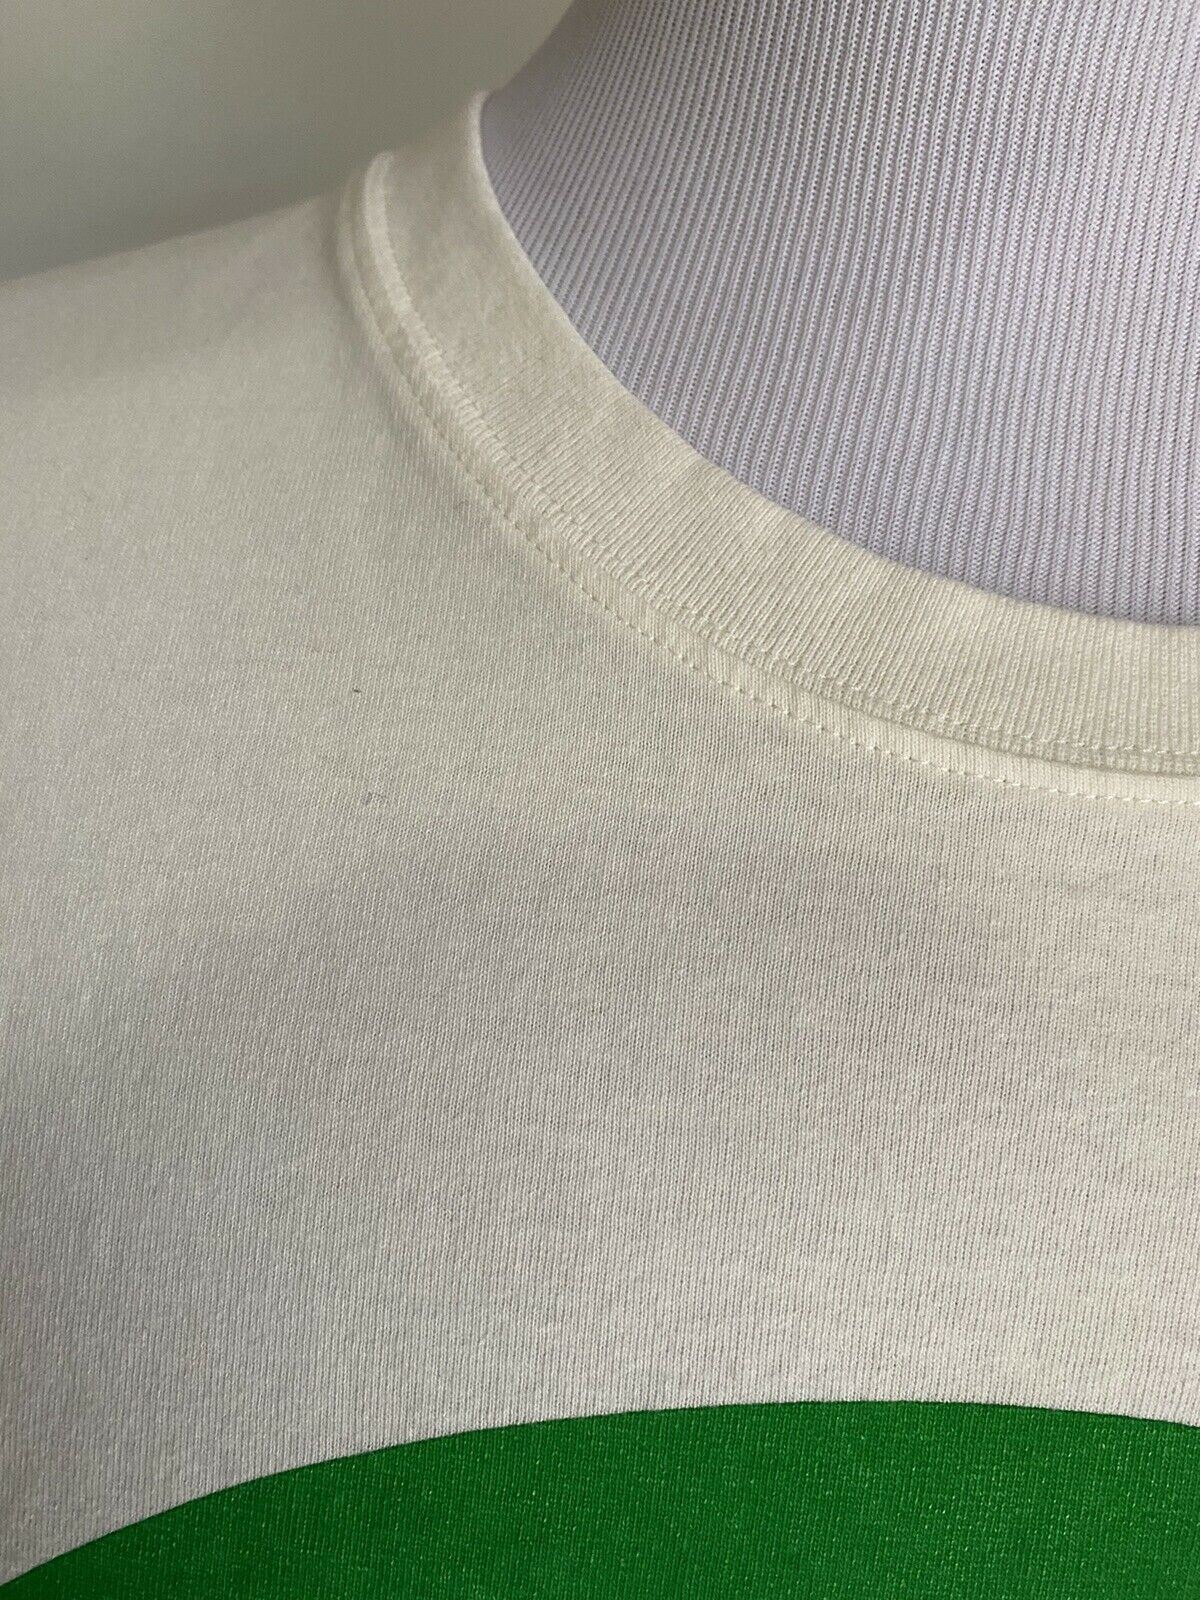 Neues Gucci Herren-Kurzarm-T-Shirt Milch/Grün/Rot Größe XXXL Italien